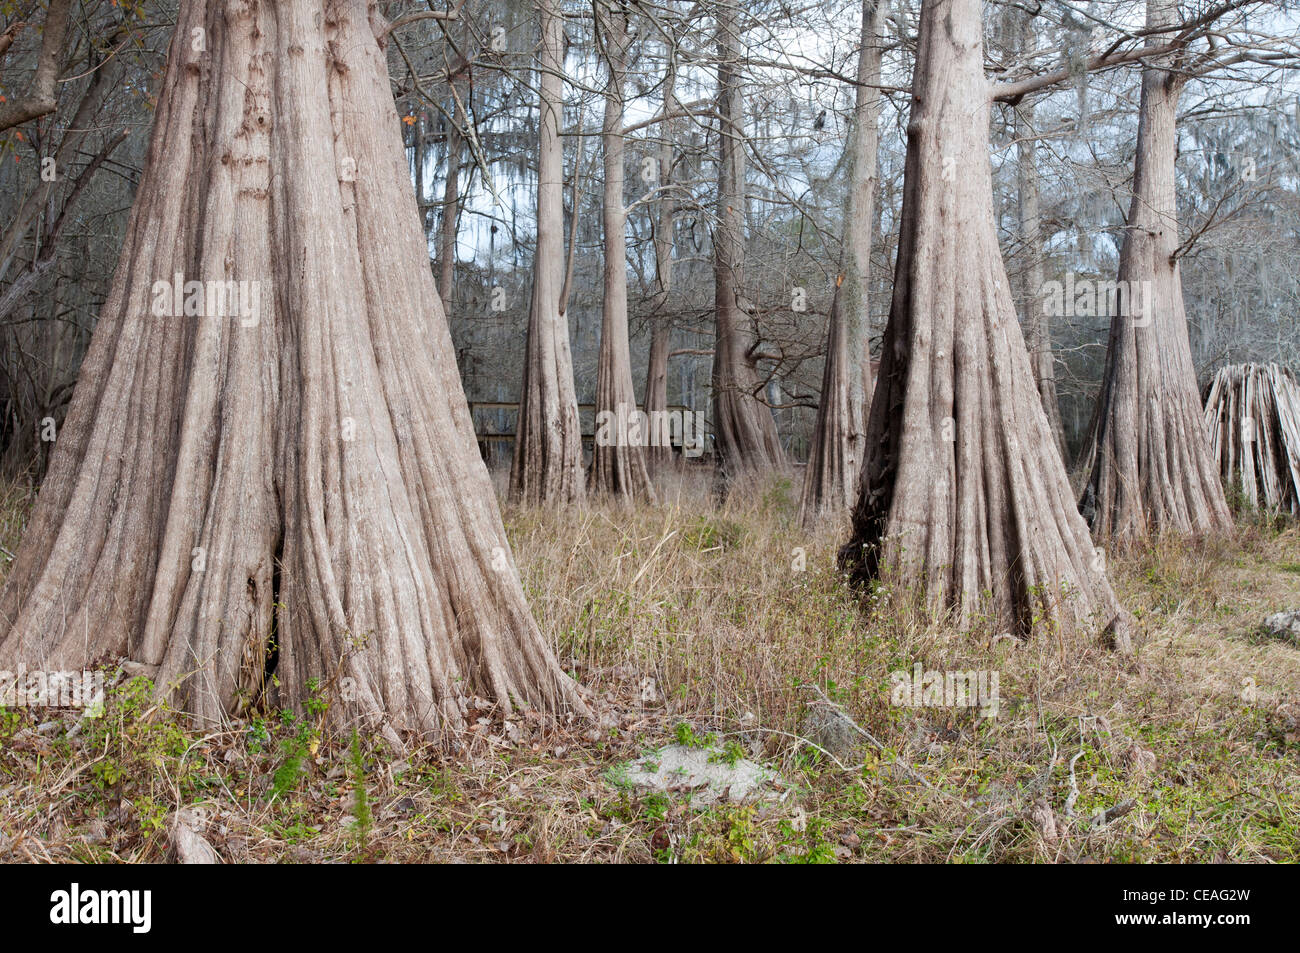 Géant, solide tronc de cyprès chauve, Taxodium distichum arbres près de Santa Fe river, Florida, United States, USA, Amérique du Nord Banque D'Images